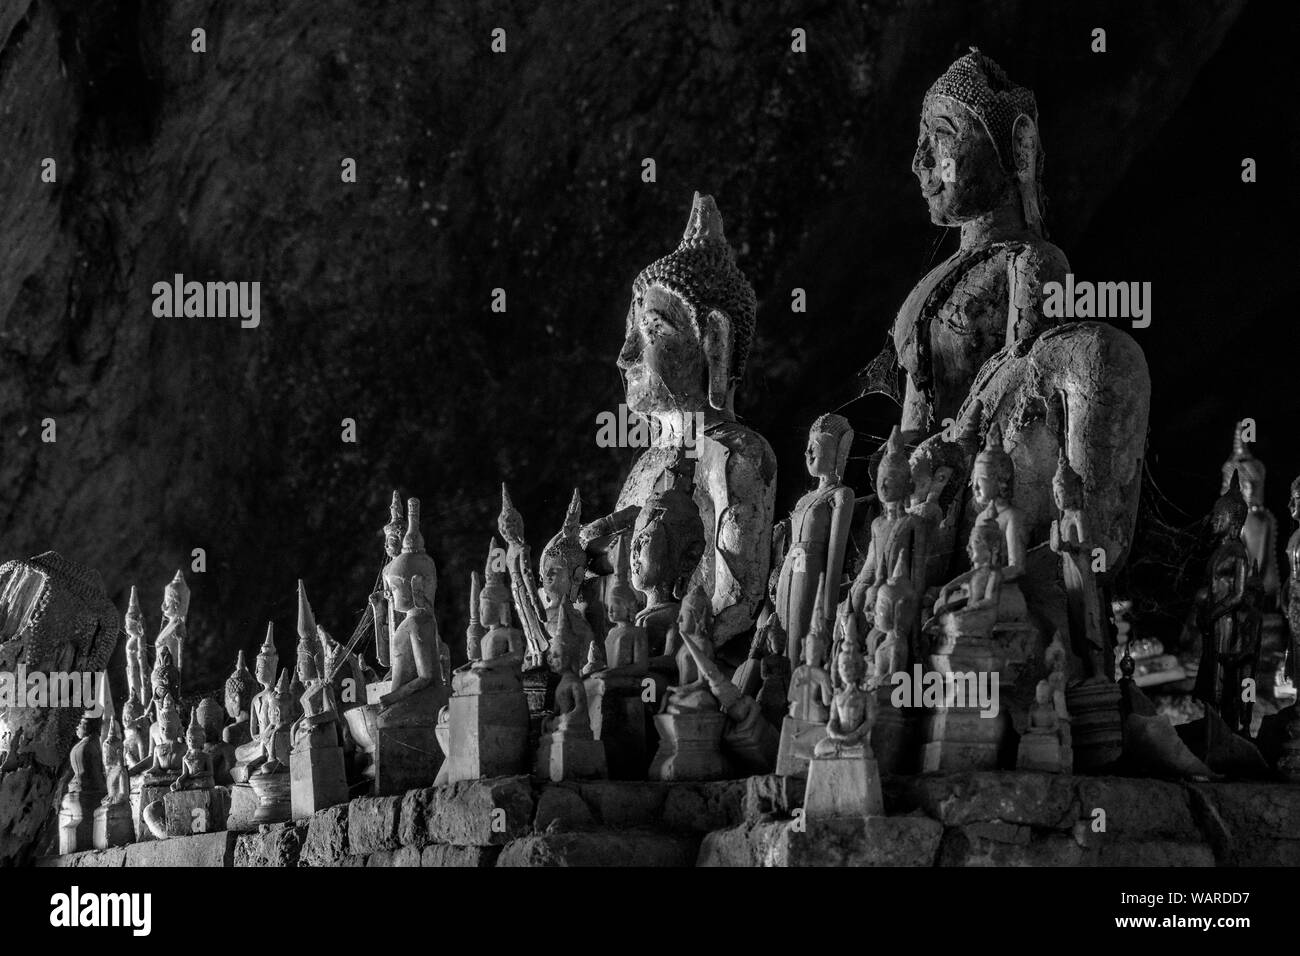 L'Asie du Sud-Est, Laos, Luang Prabang, grotte de Pak Ou sur le fleuve Mekong Banque D'Images